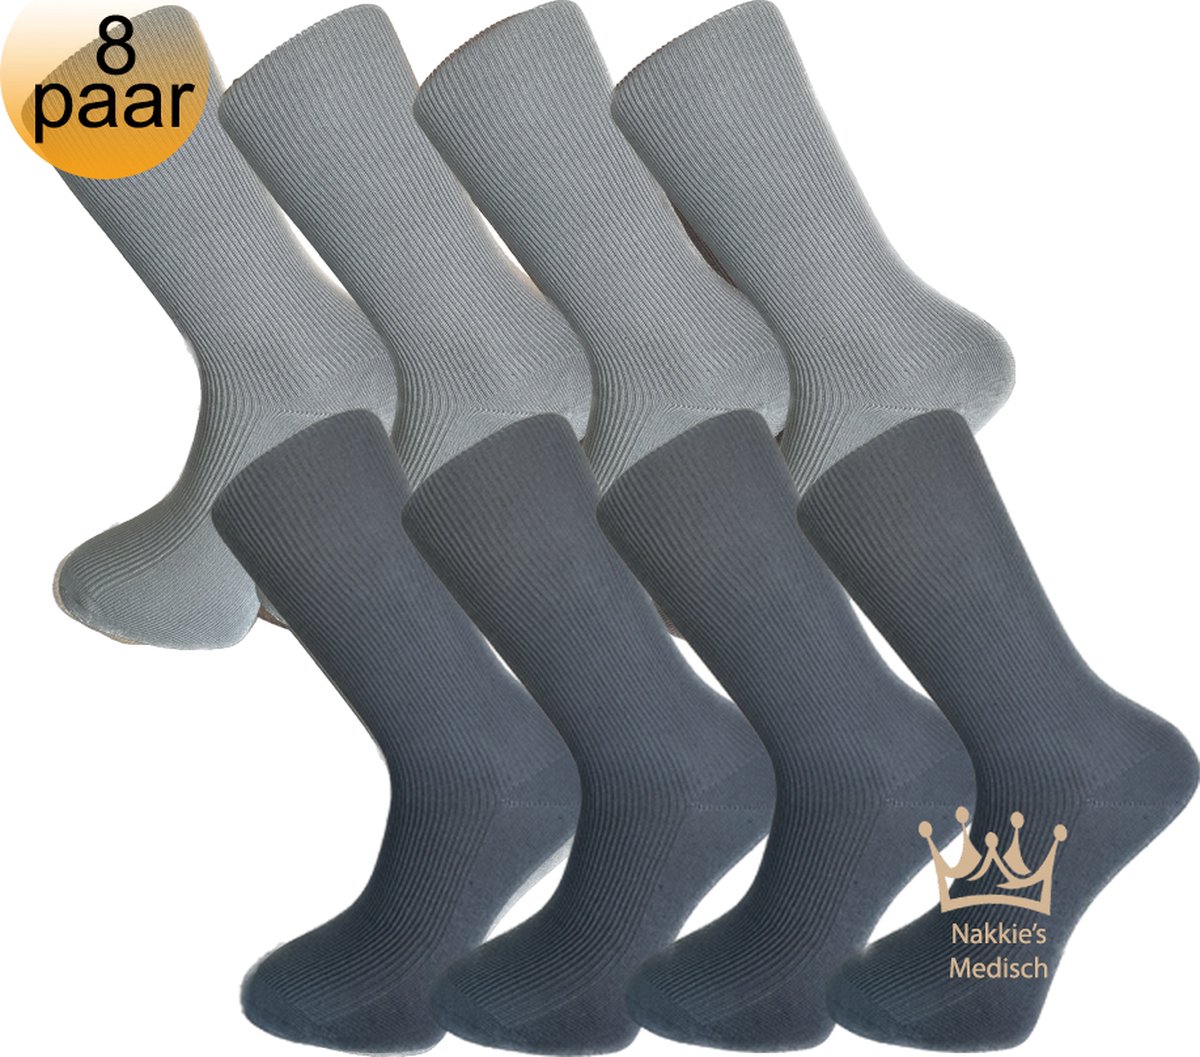 Nakkie's Medische sokken | 100% katoen | 8 paar | Grijs en Antraciet | Maat 39/42 |Sokken voor diabeten | Anti bacterieel | Sokken zonder elastiek | Naadloos